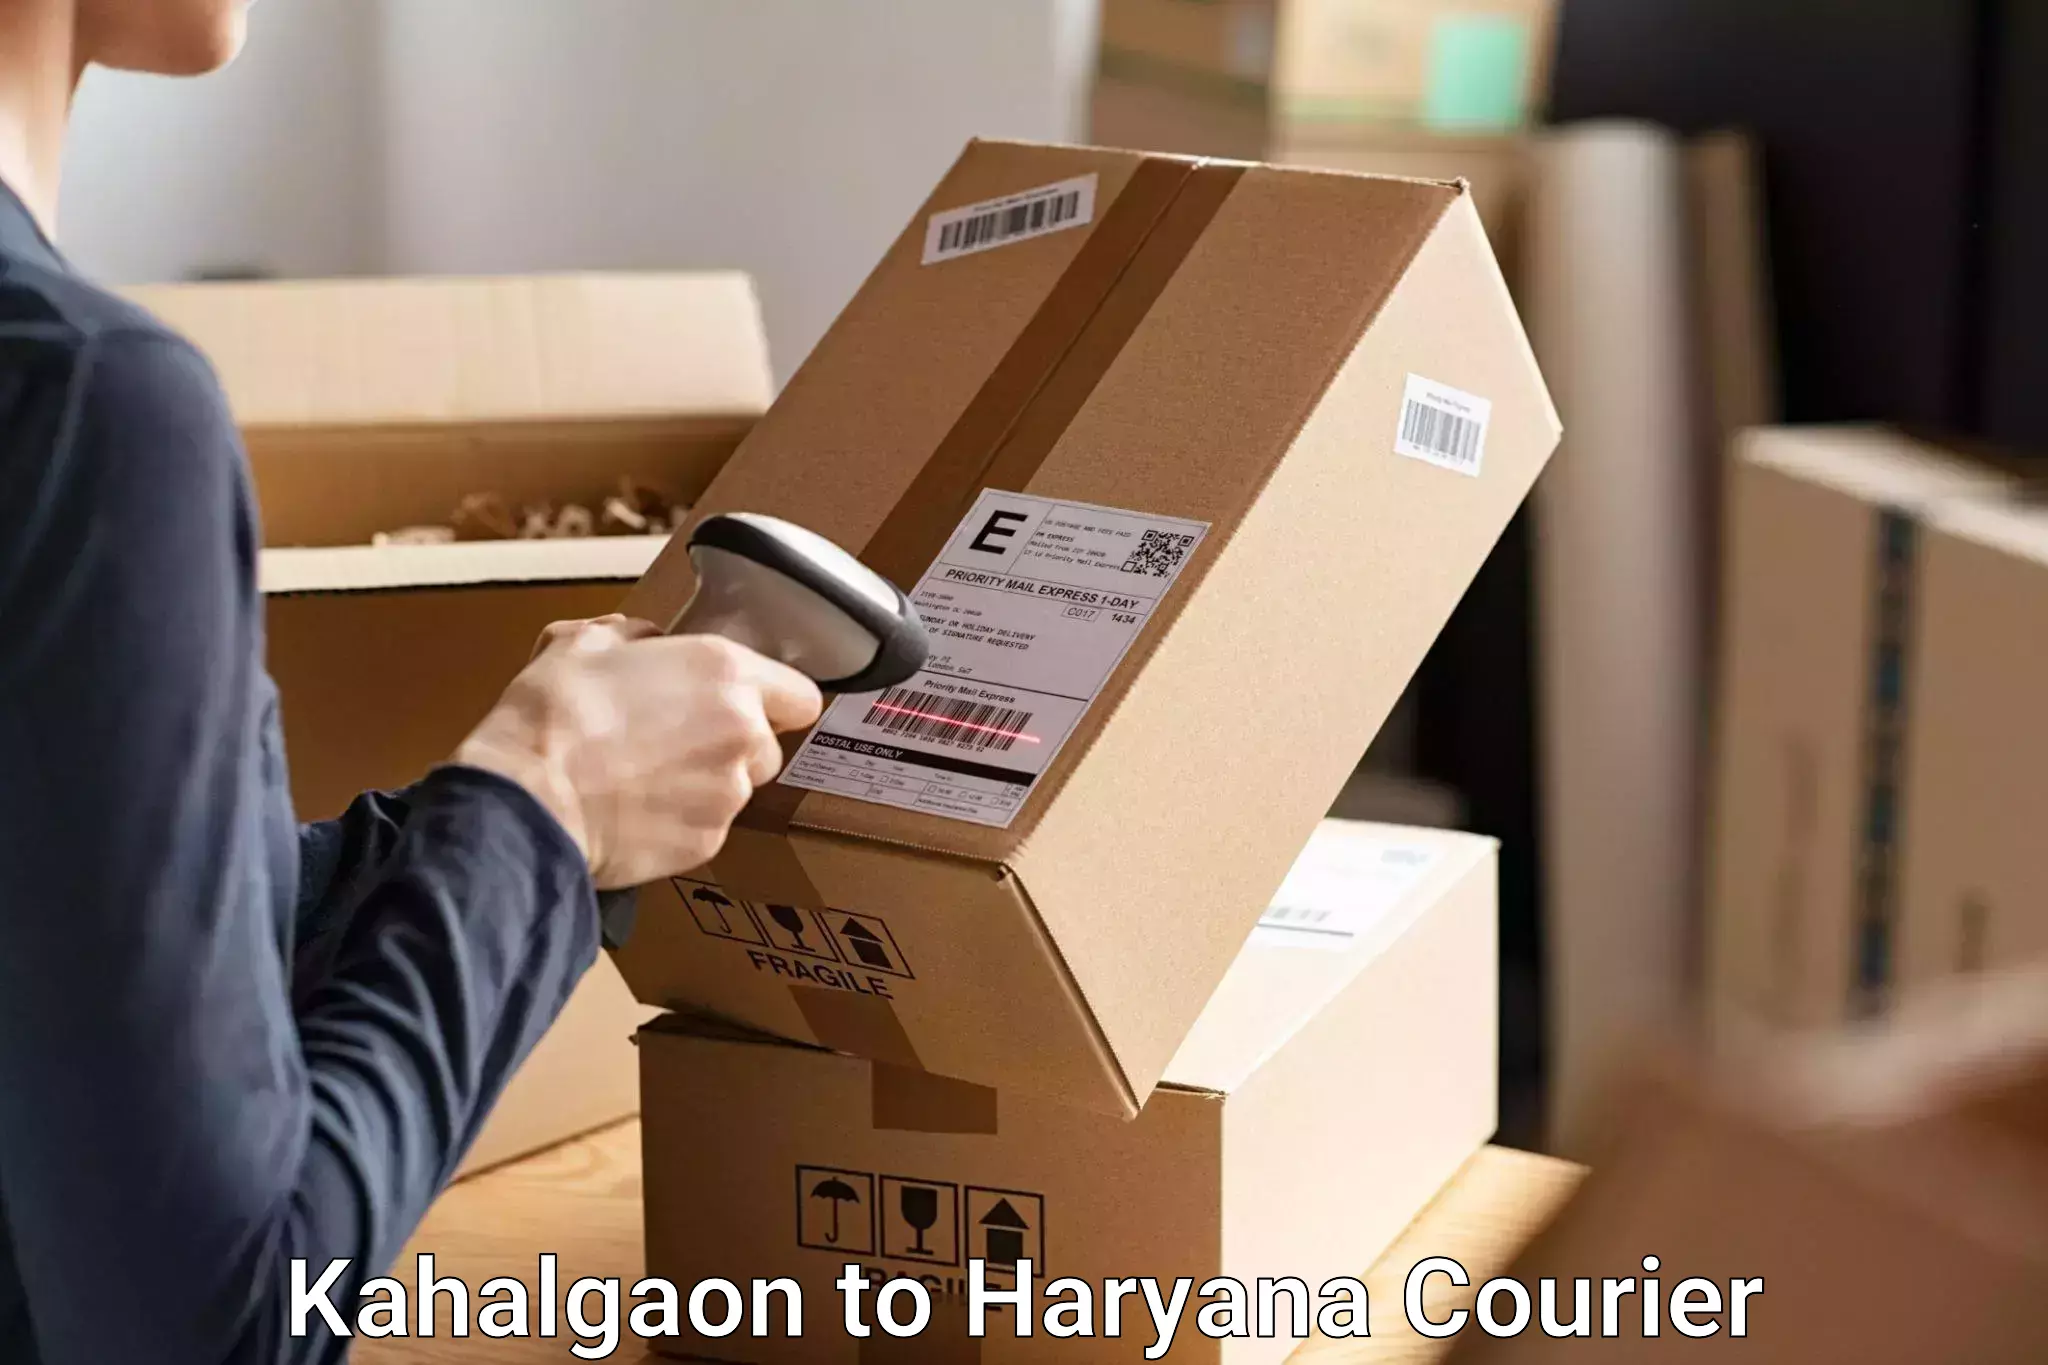 Baggage relocation service Kahalgaon to Chaudhary Charan Singh Haryana Agricultural University Hisar